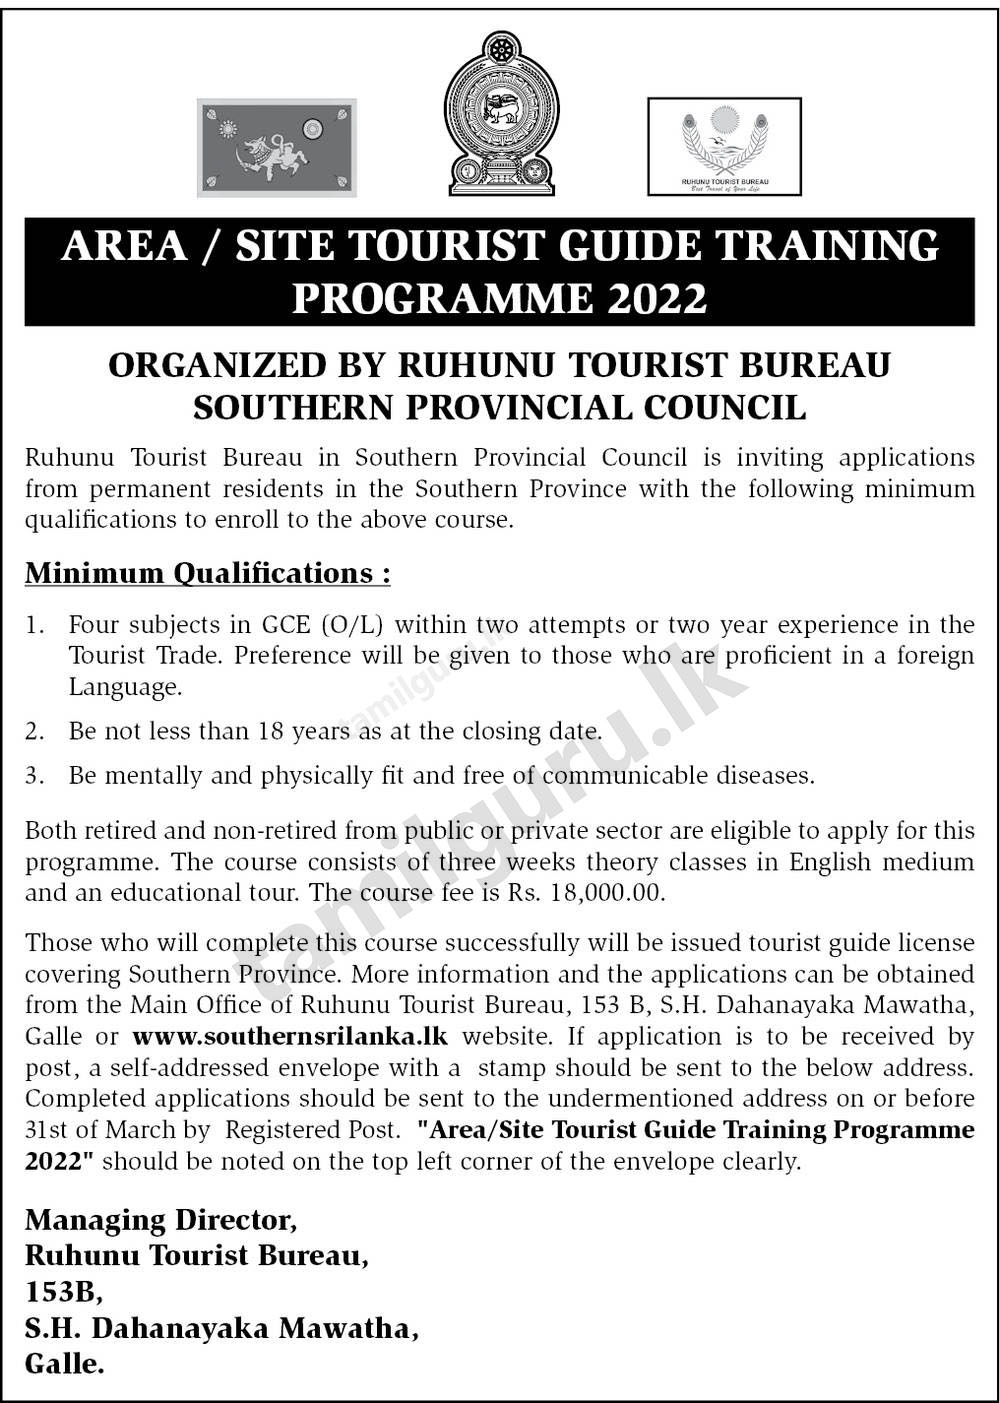 Area / Site Tourist Guide Training Programme (Course) 2022 - Ruhunu Tourist Bureau, Southern Province (Notice in English)